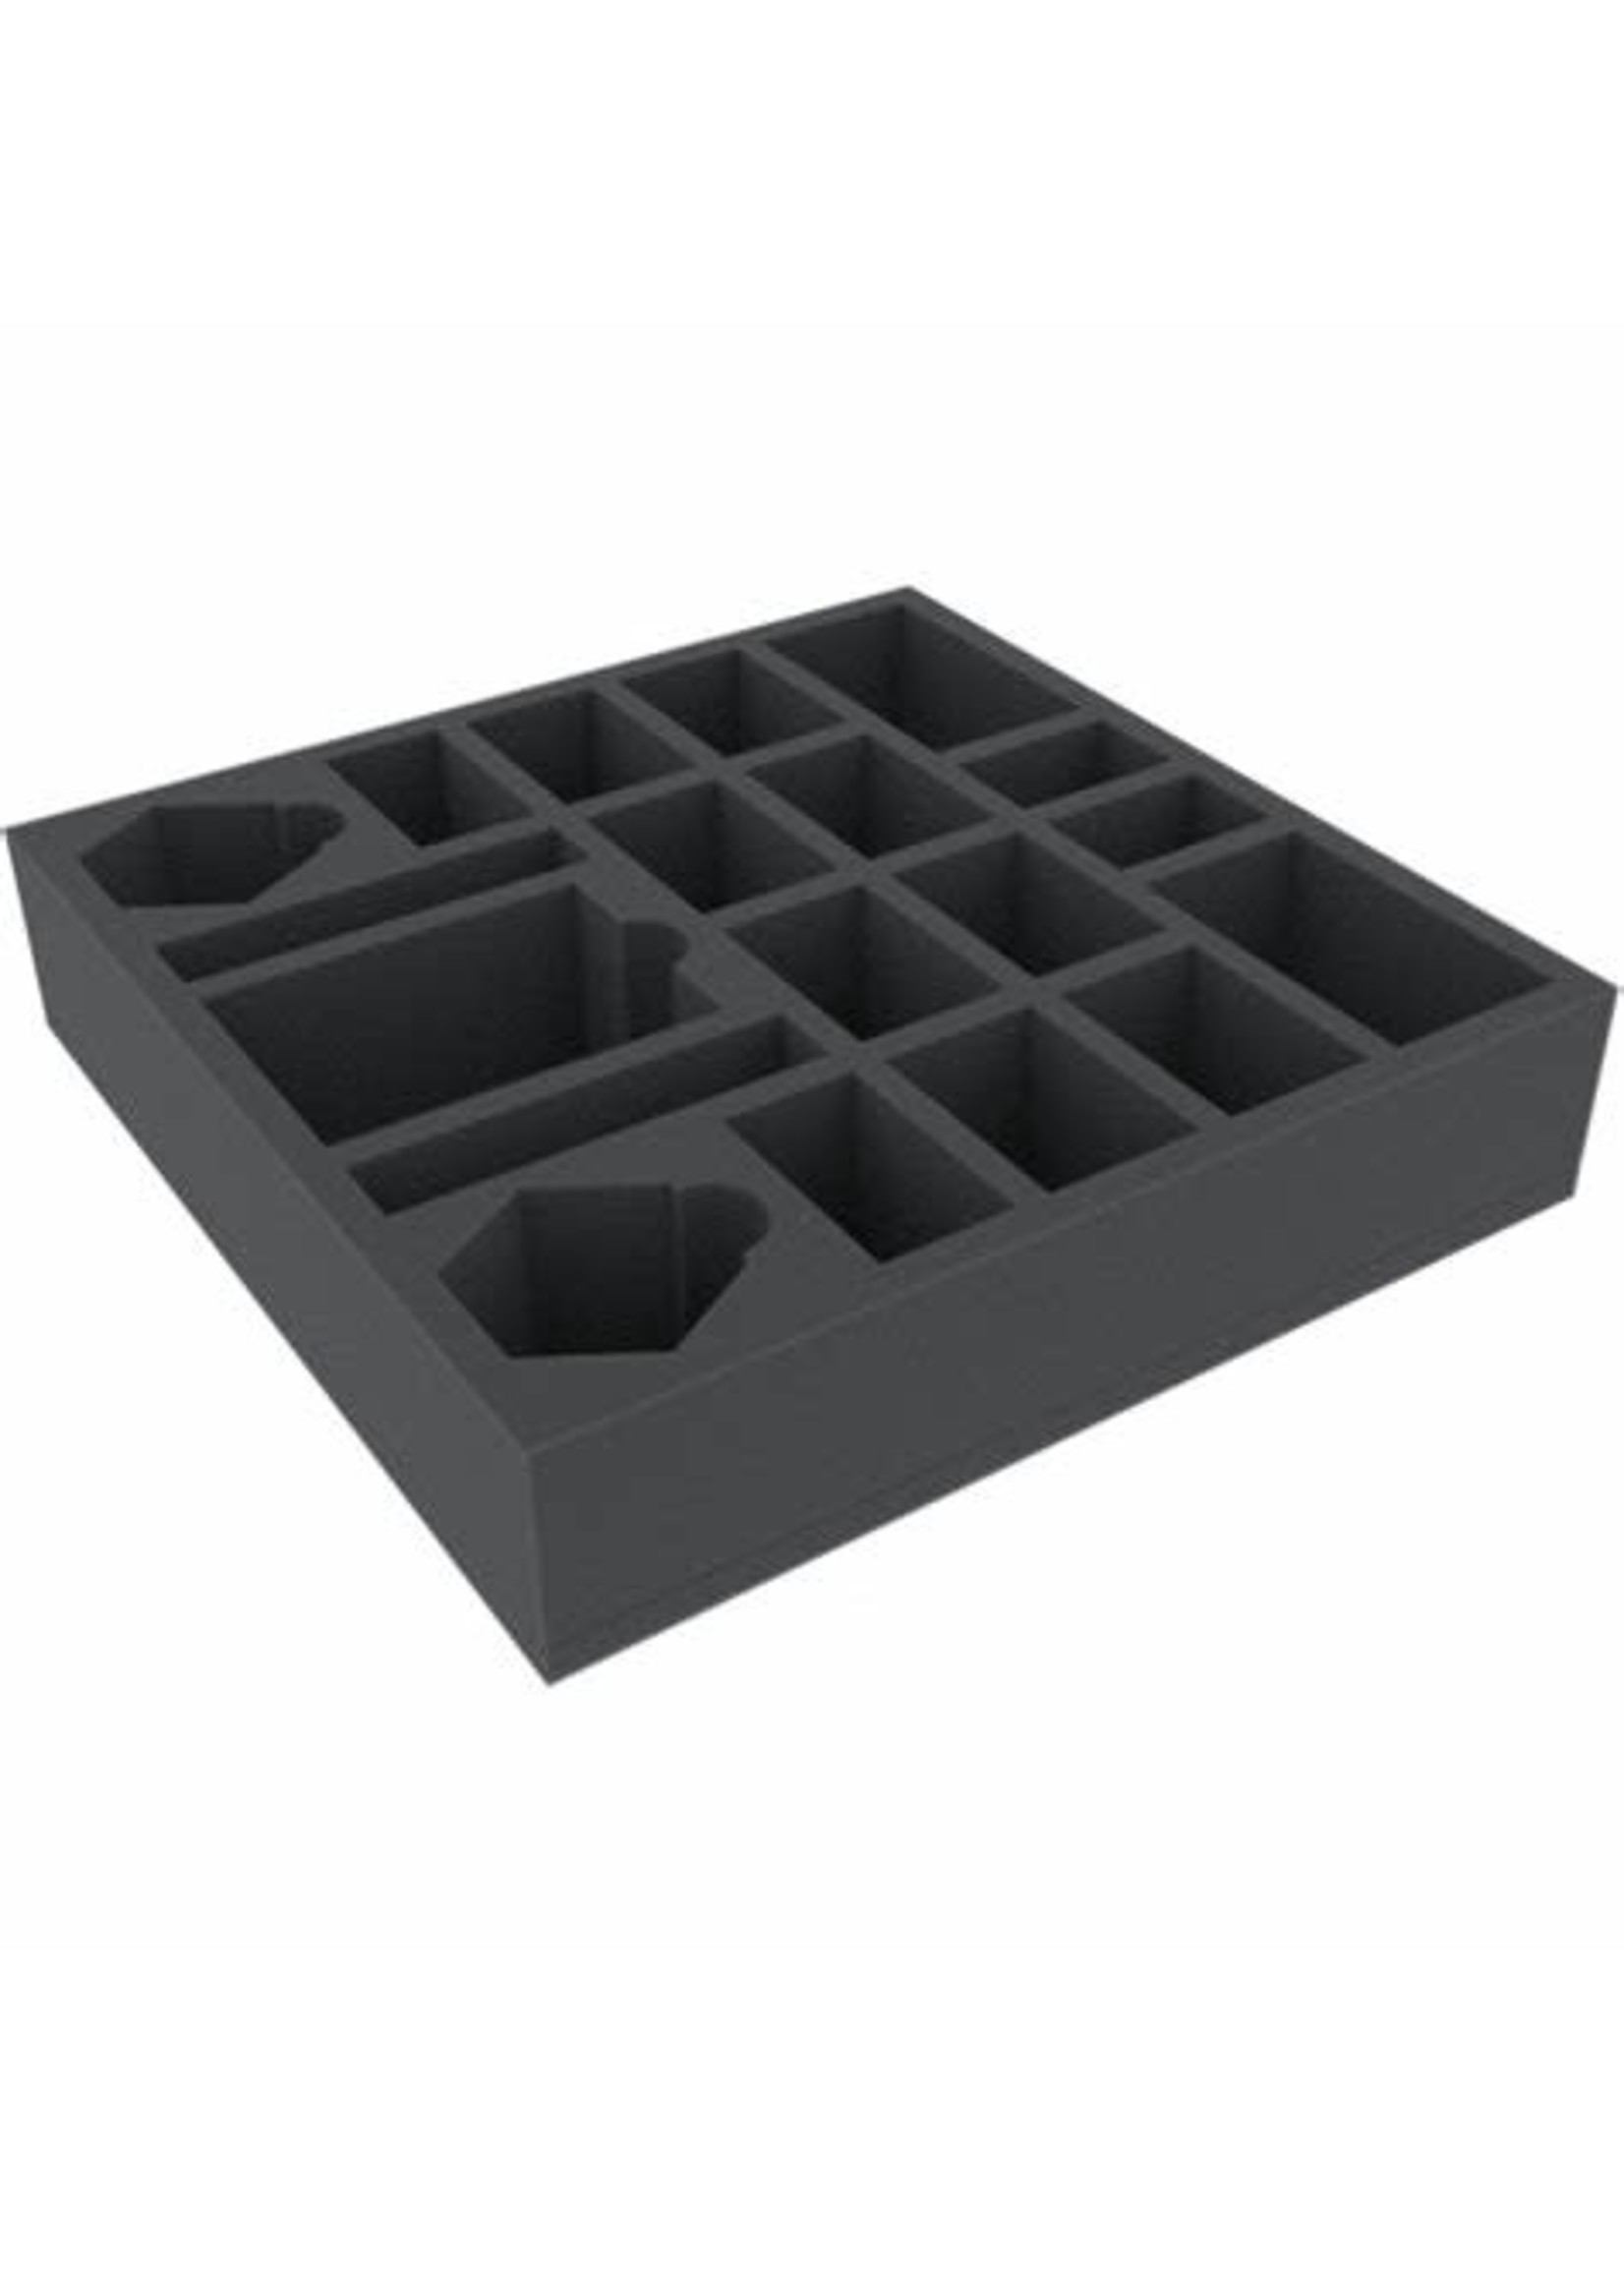 Battle Foam - Godtear Eternal Glade Starter Set Game Box Foam Tray